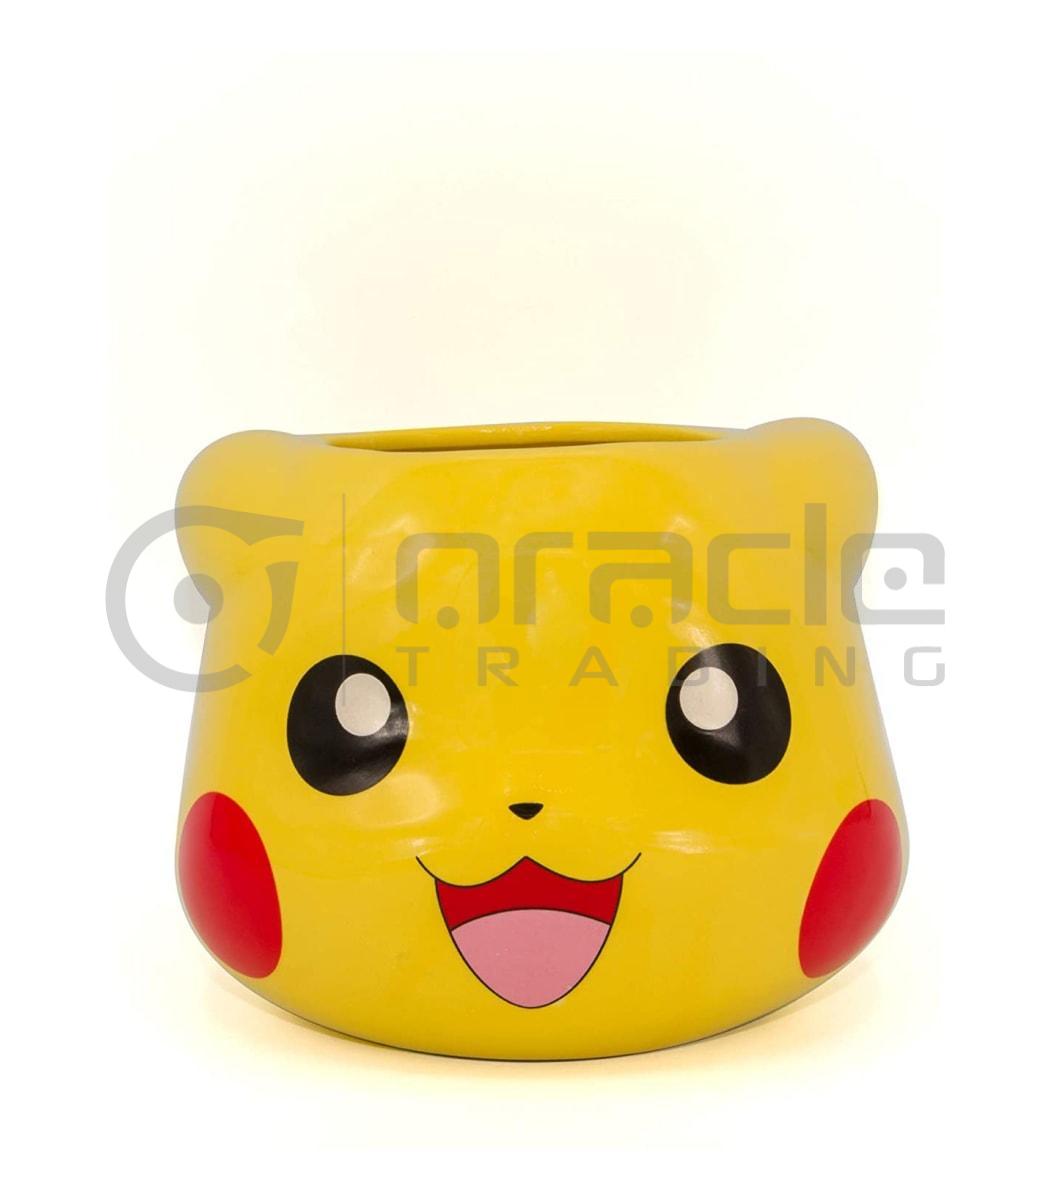 Pokémon 3D Shaped Mug - Pikachu